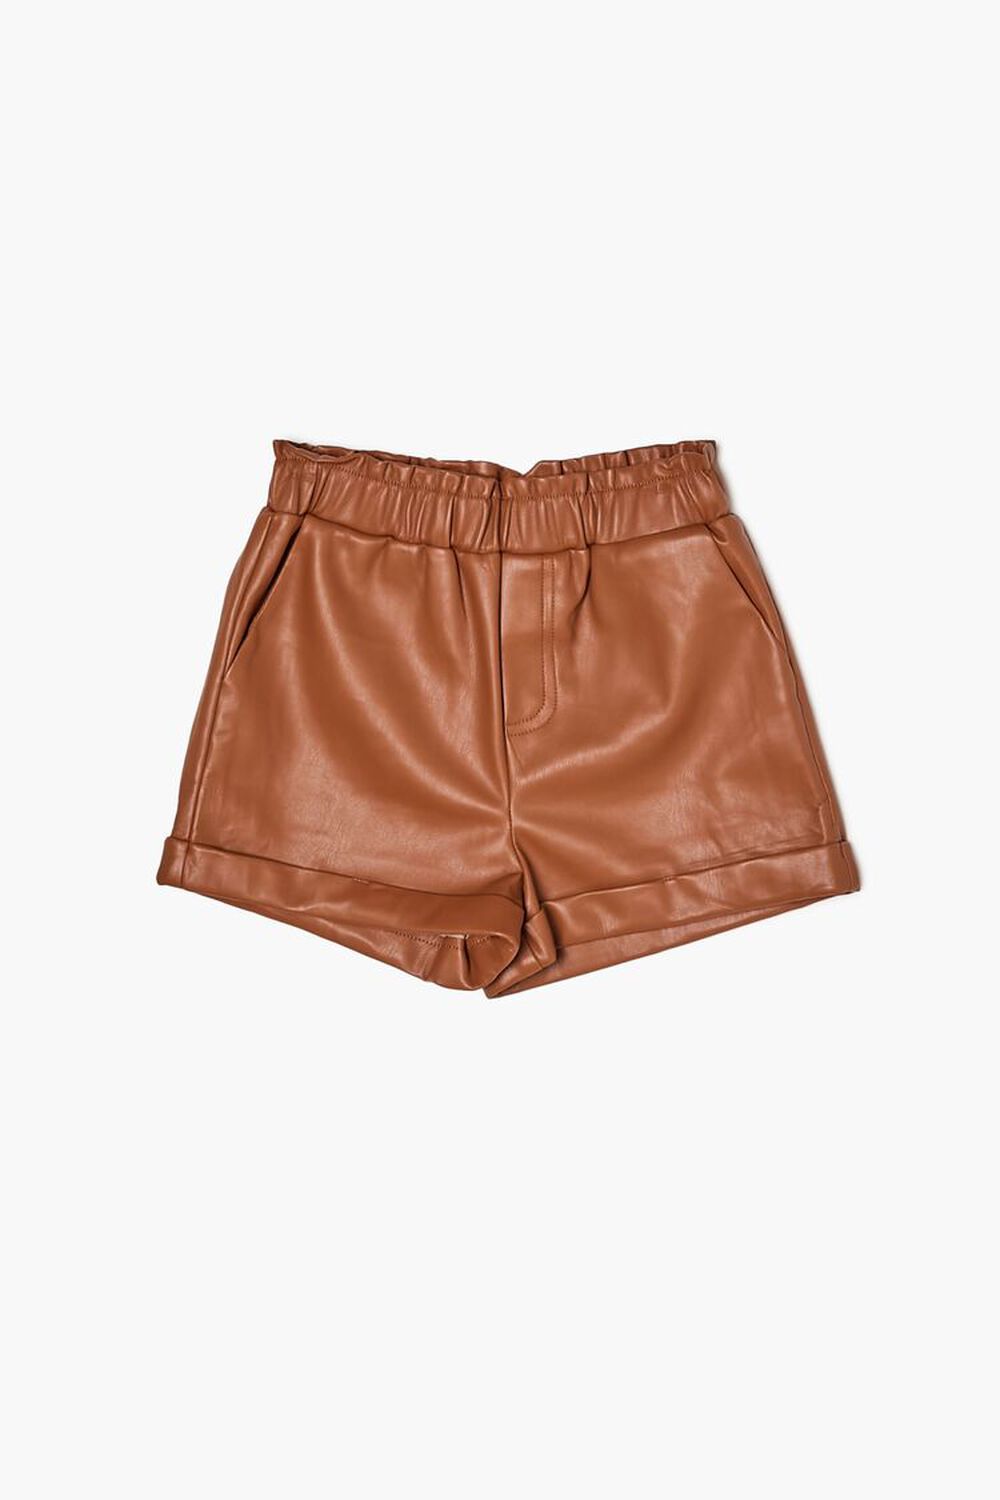 WALNUT Girls Faux Leather Shorts (Kids), image 3